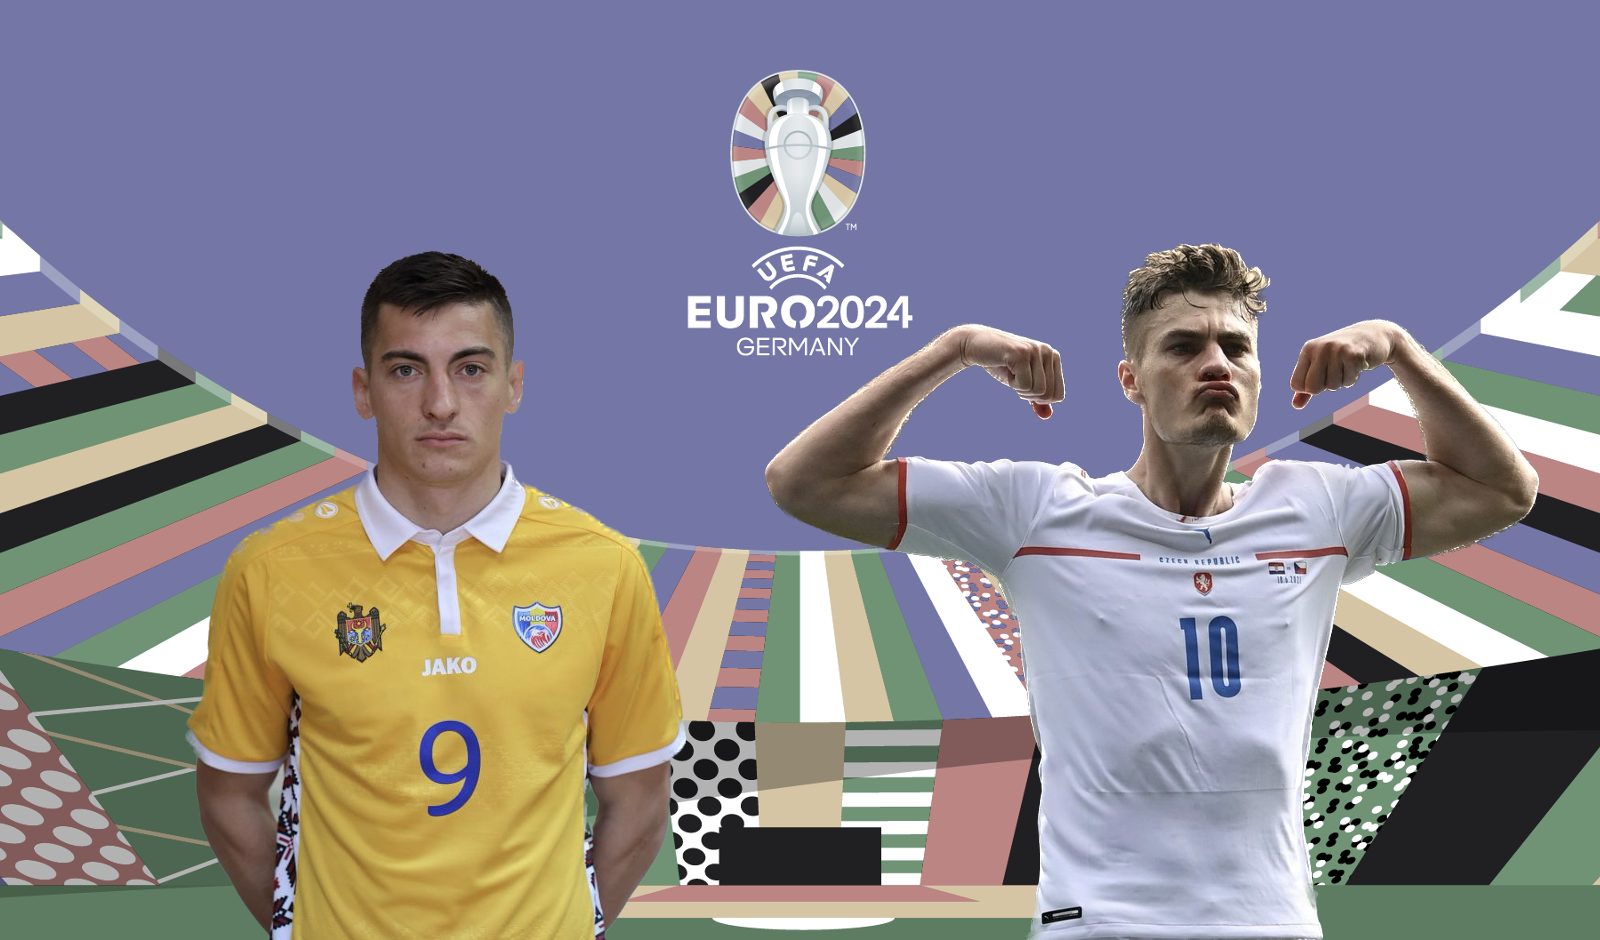 Kvalifikace EURO 2024: Moldavsko vs. Česko